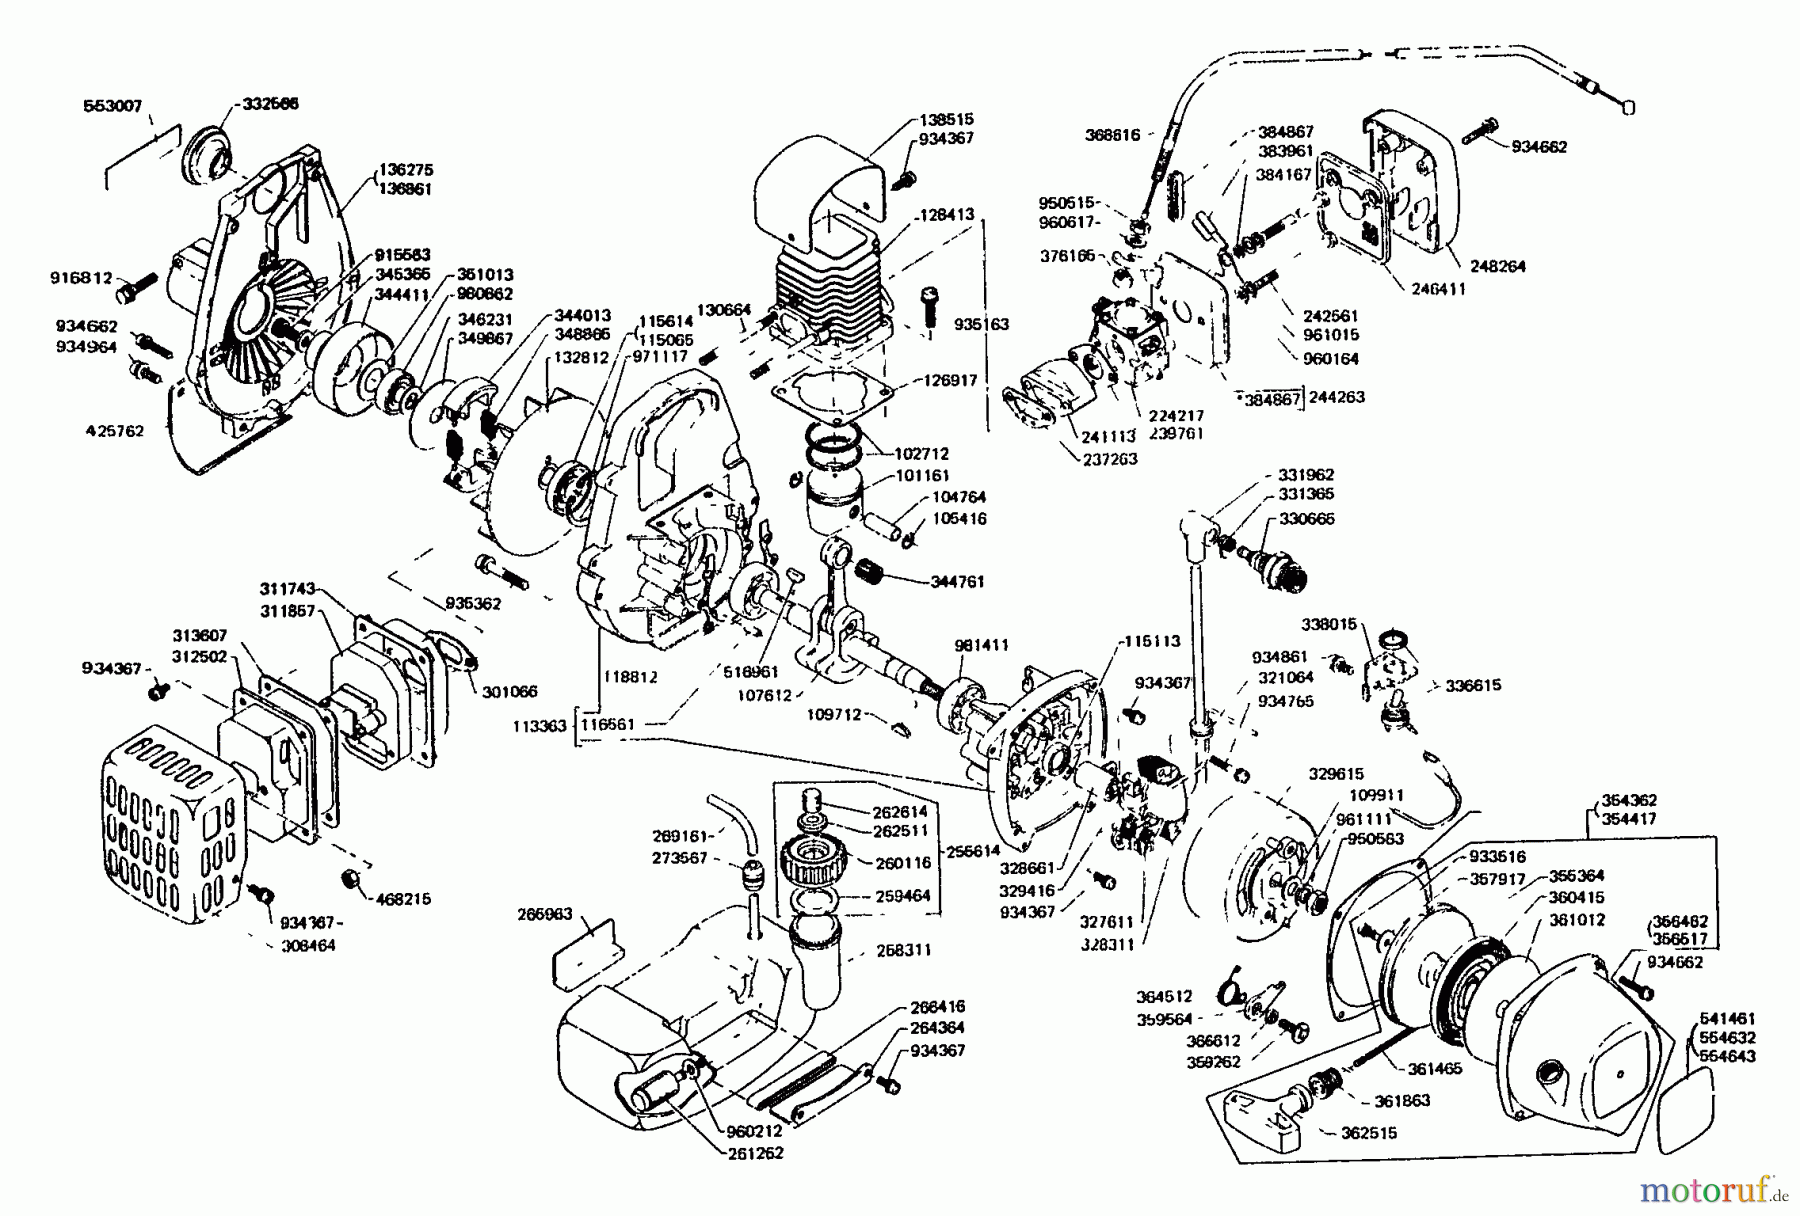  Echo Trimmer, Faden / Bürste KE-200DA - Echo String Trimmer Engine Engine, Crankcase, Ignition